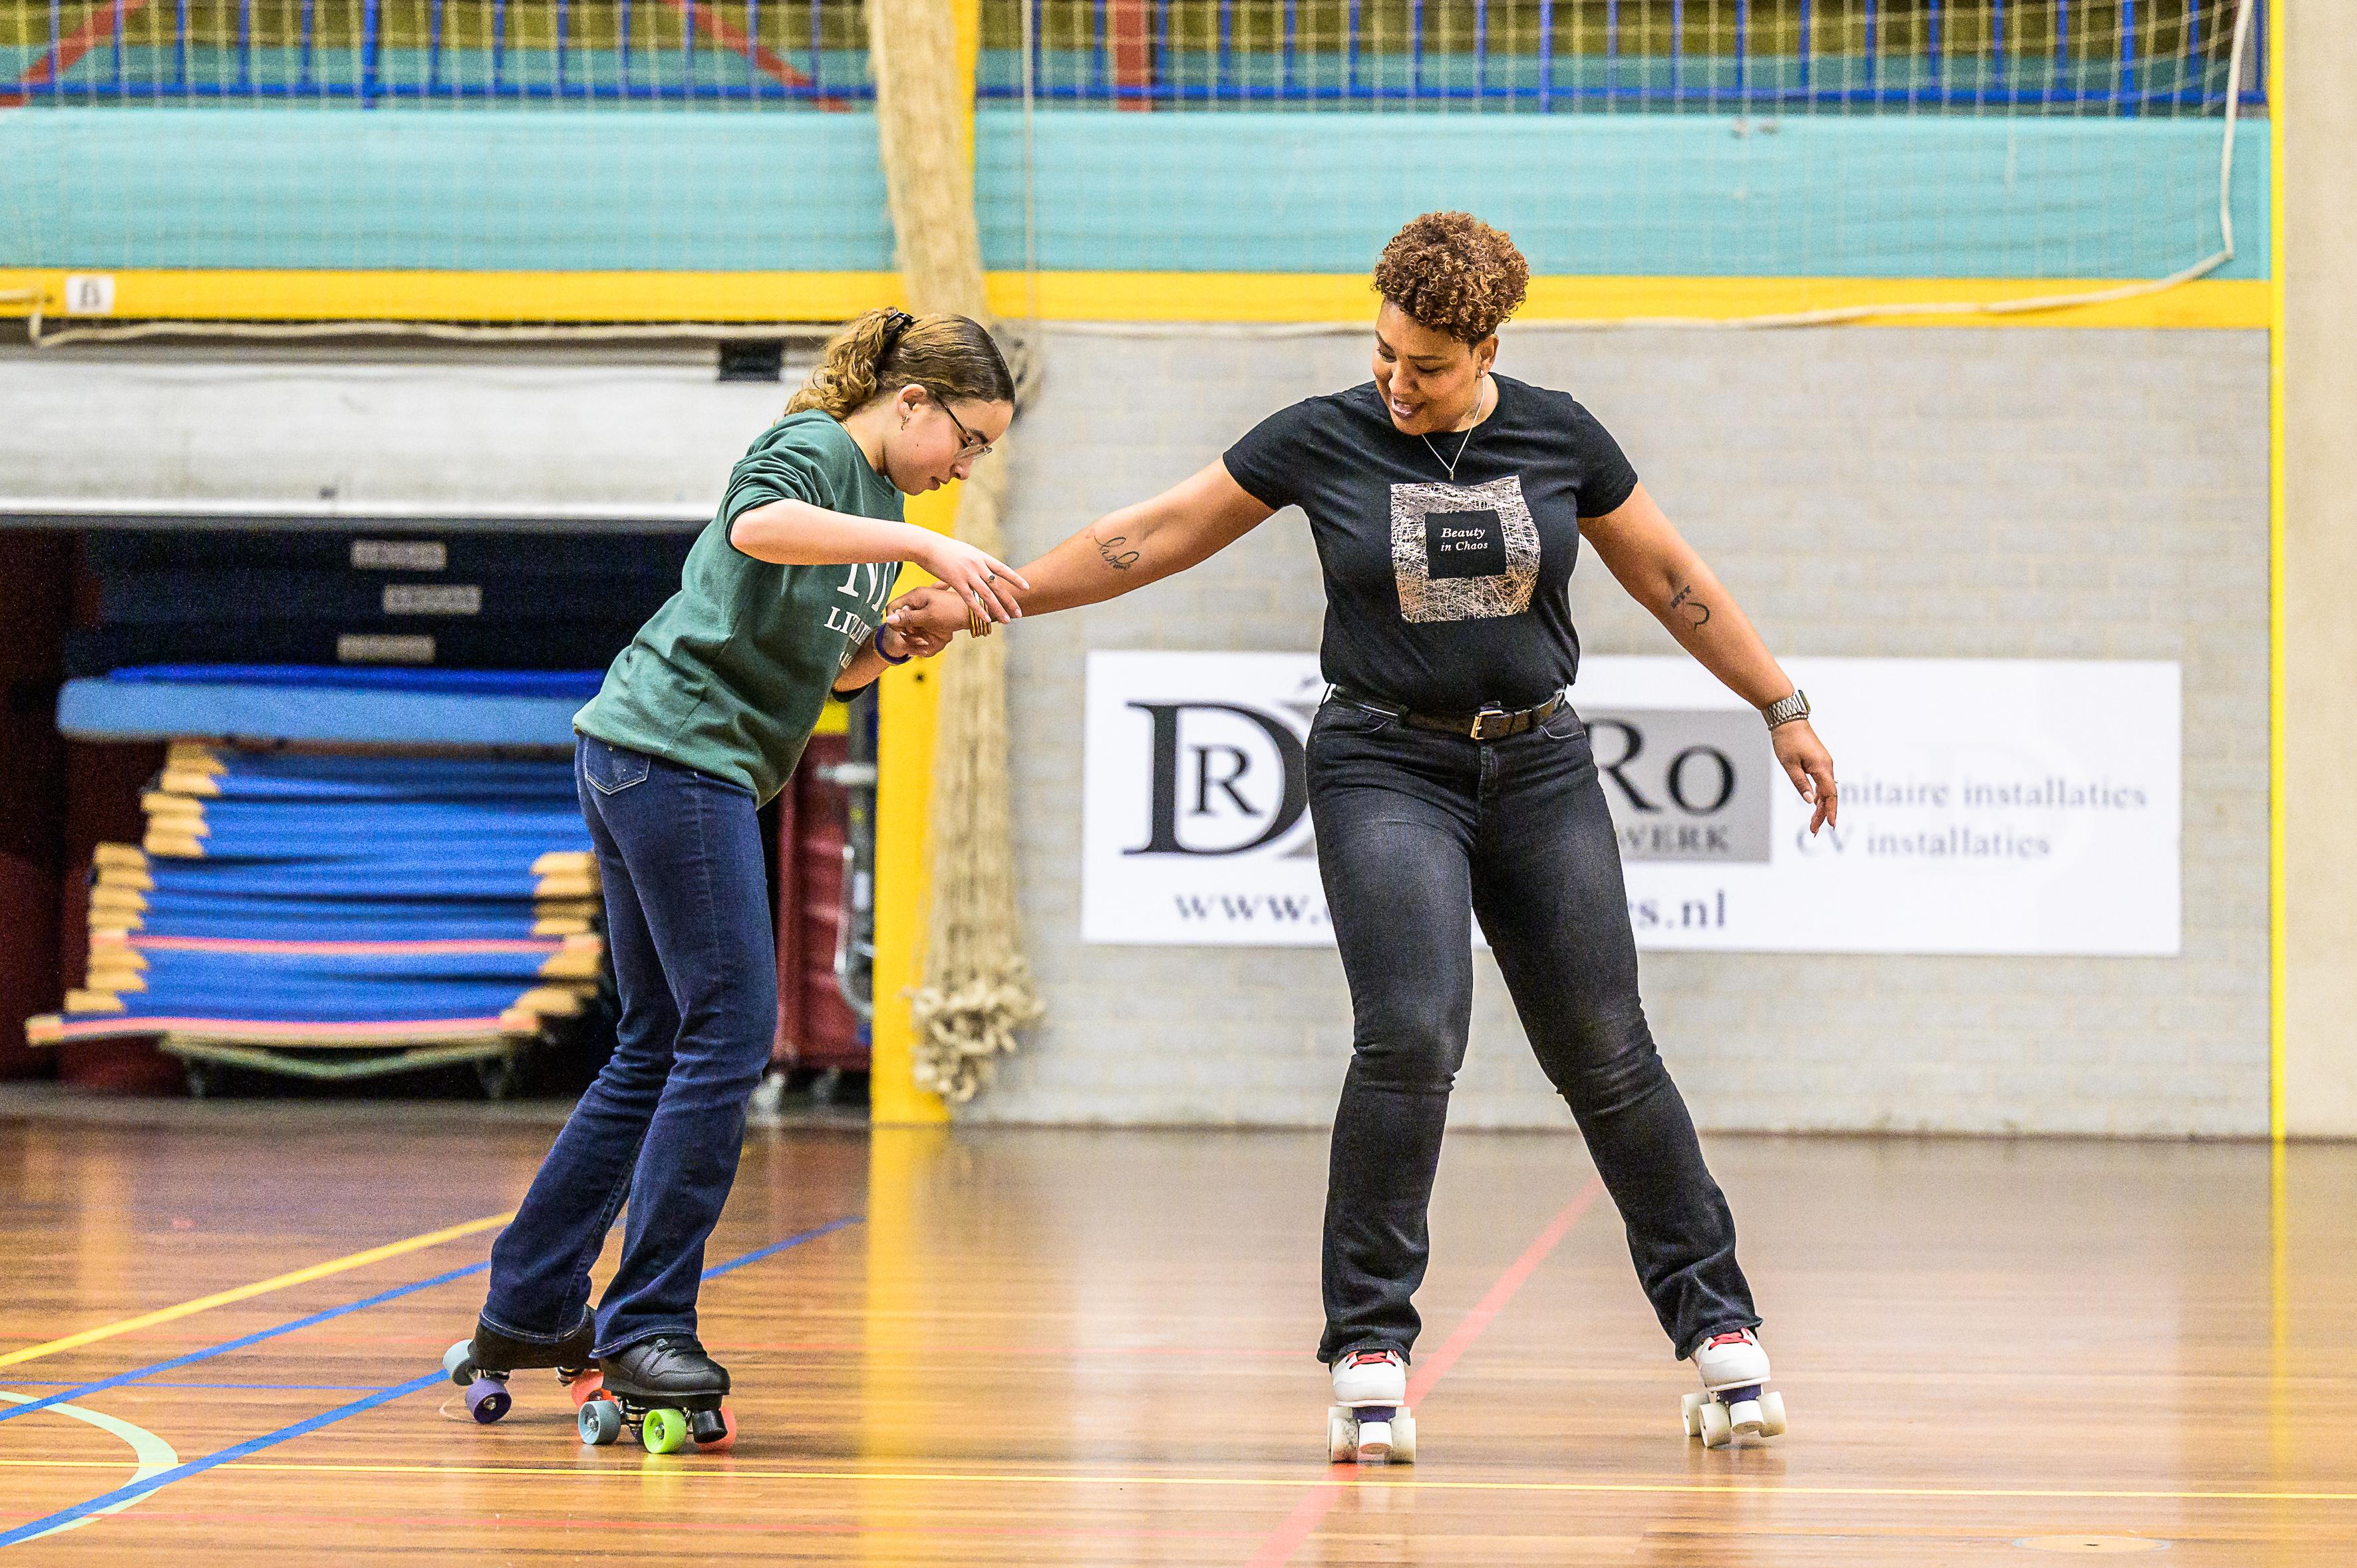 Alice moeder Geplooid Pirouettes in de sporthal: skaters uit heel Nederland komen naar Wormer om  te leren kunstrolschaatsen | Noordhollandsdagblad